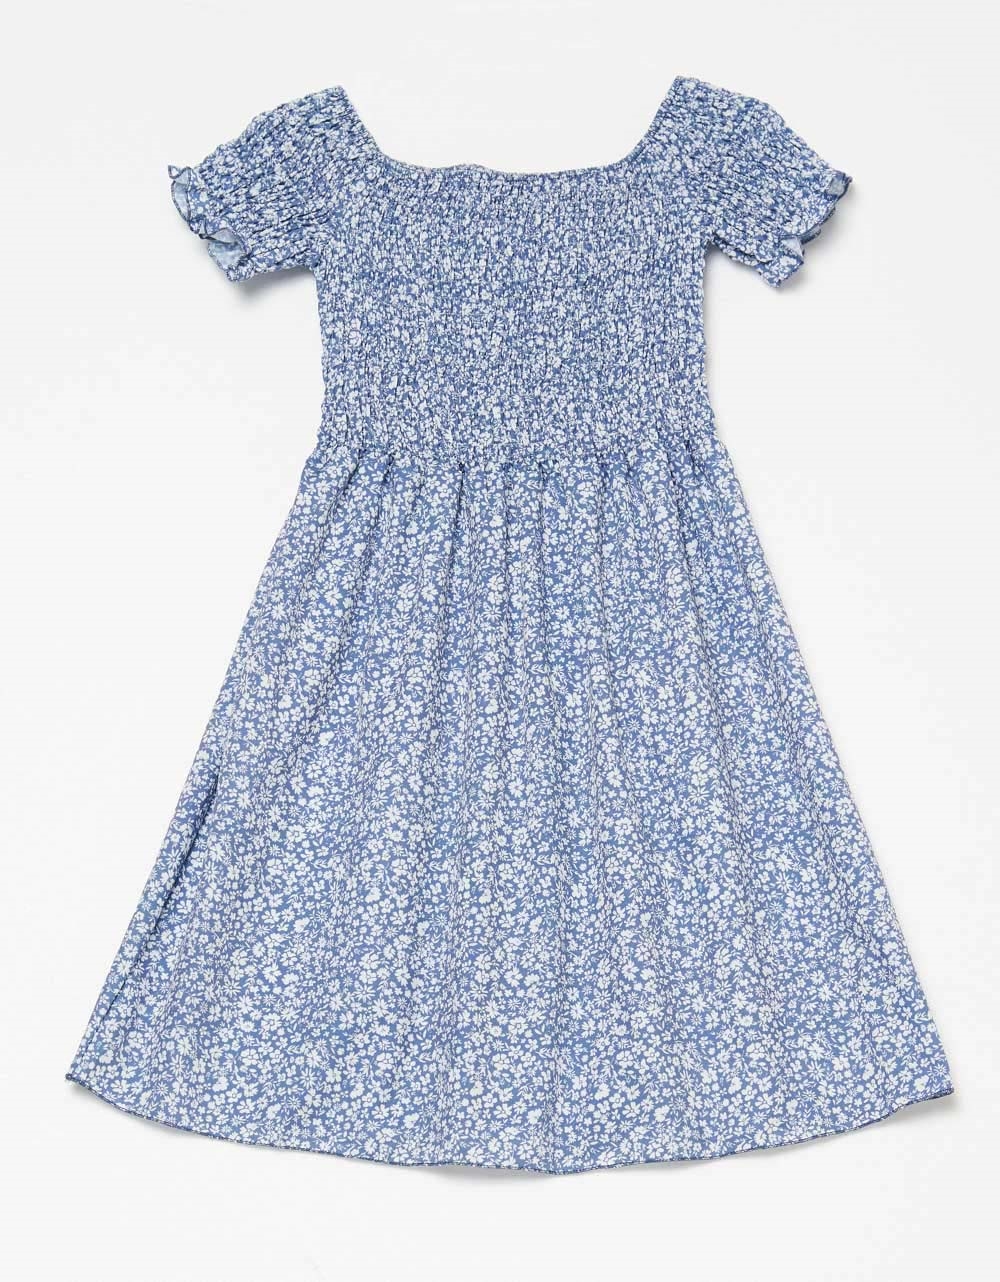 Εικόνα από Floral μίνι φόρεμα με σφηκοφωλιά Μπλε